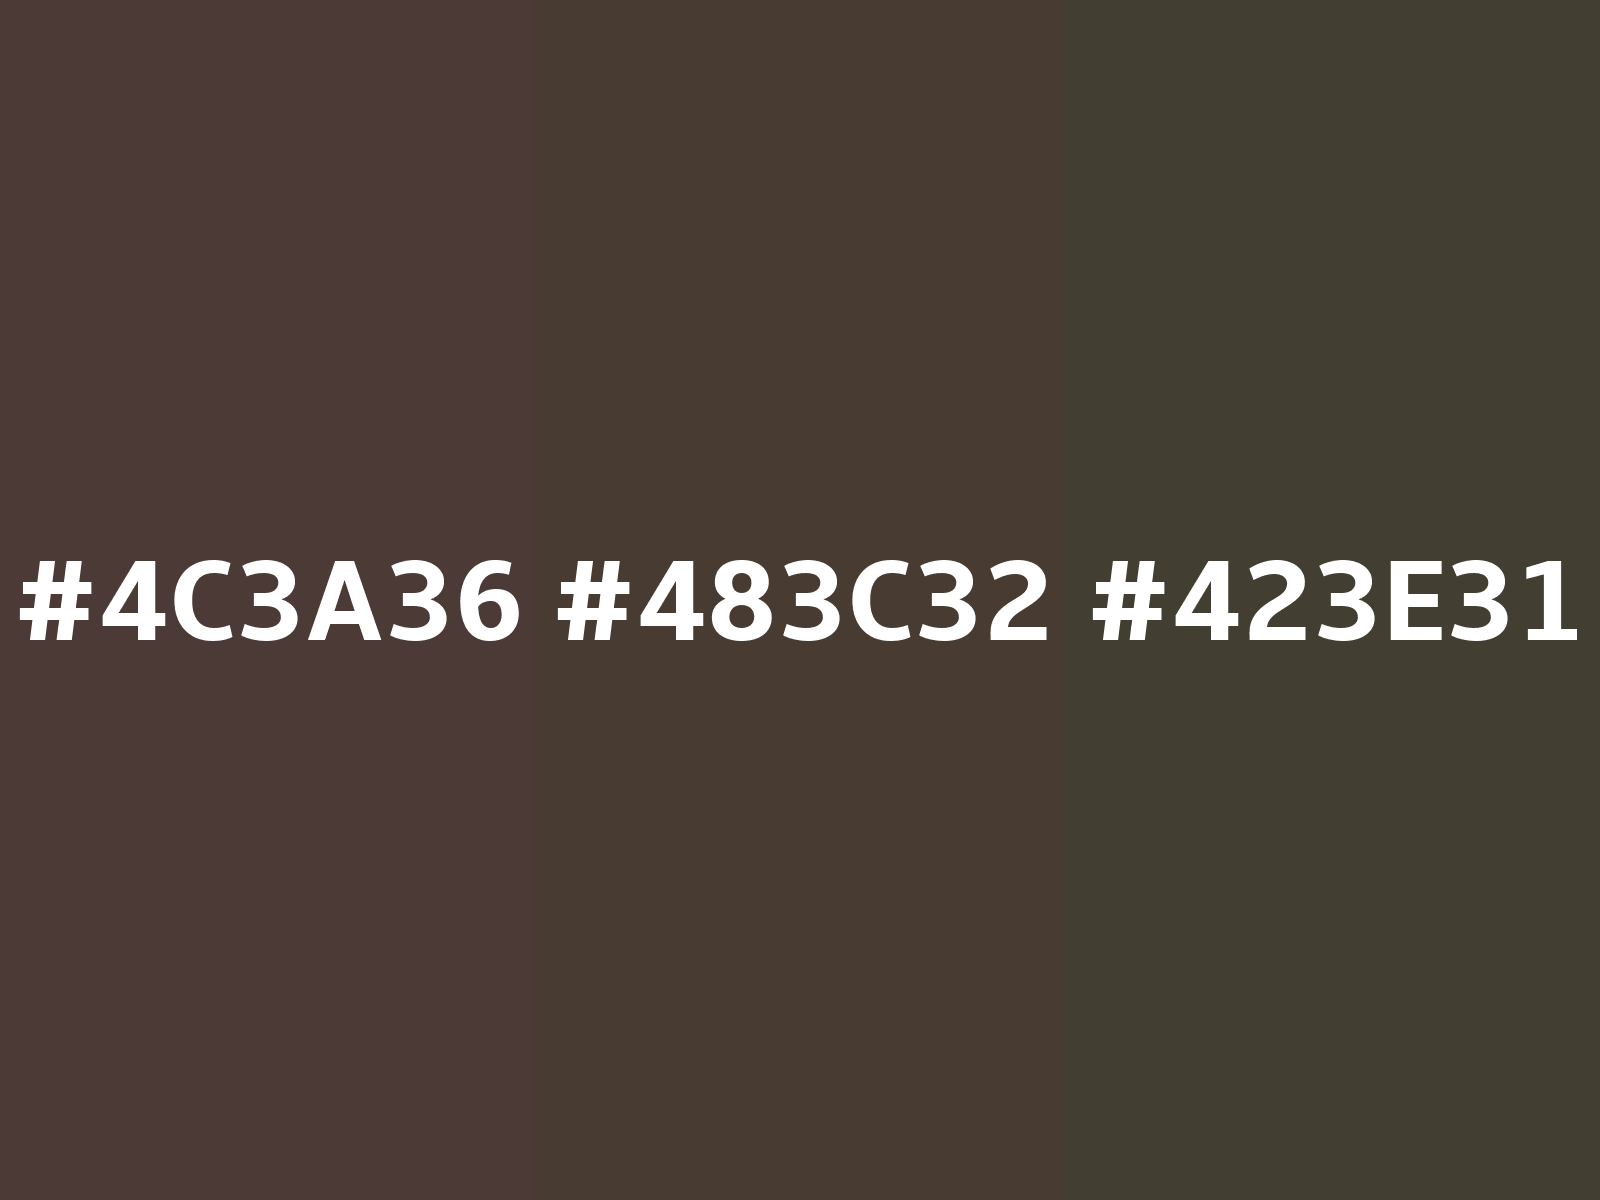 Walmart distinct natural taupe - #c3beb6 color code hexadecimal